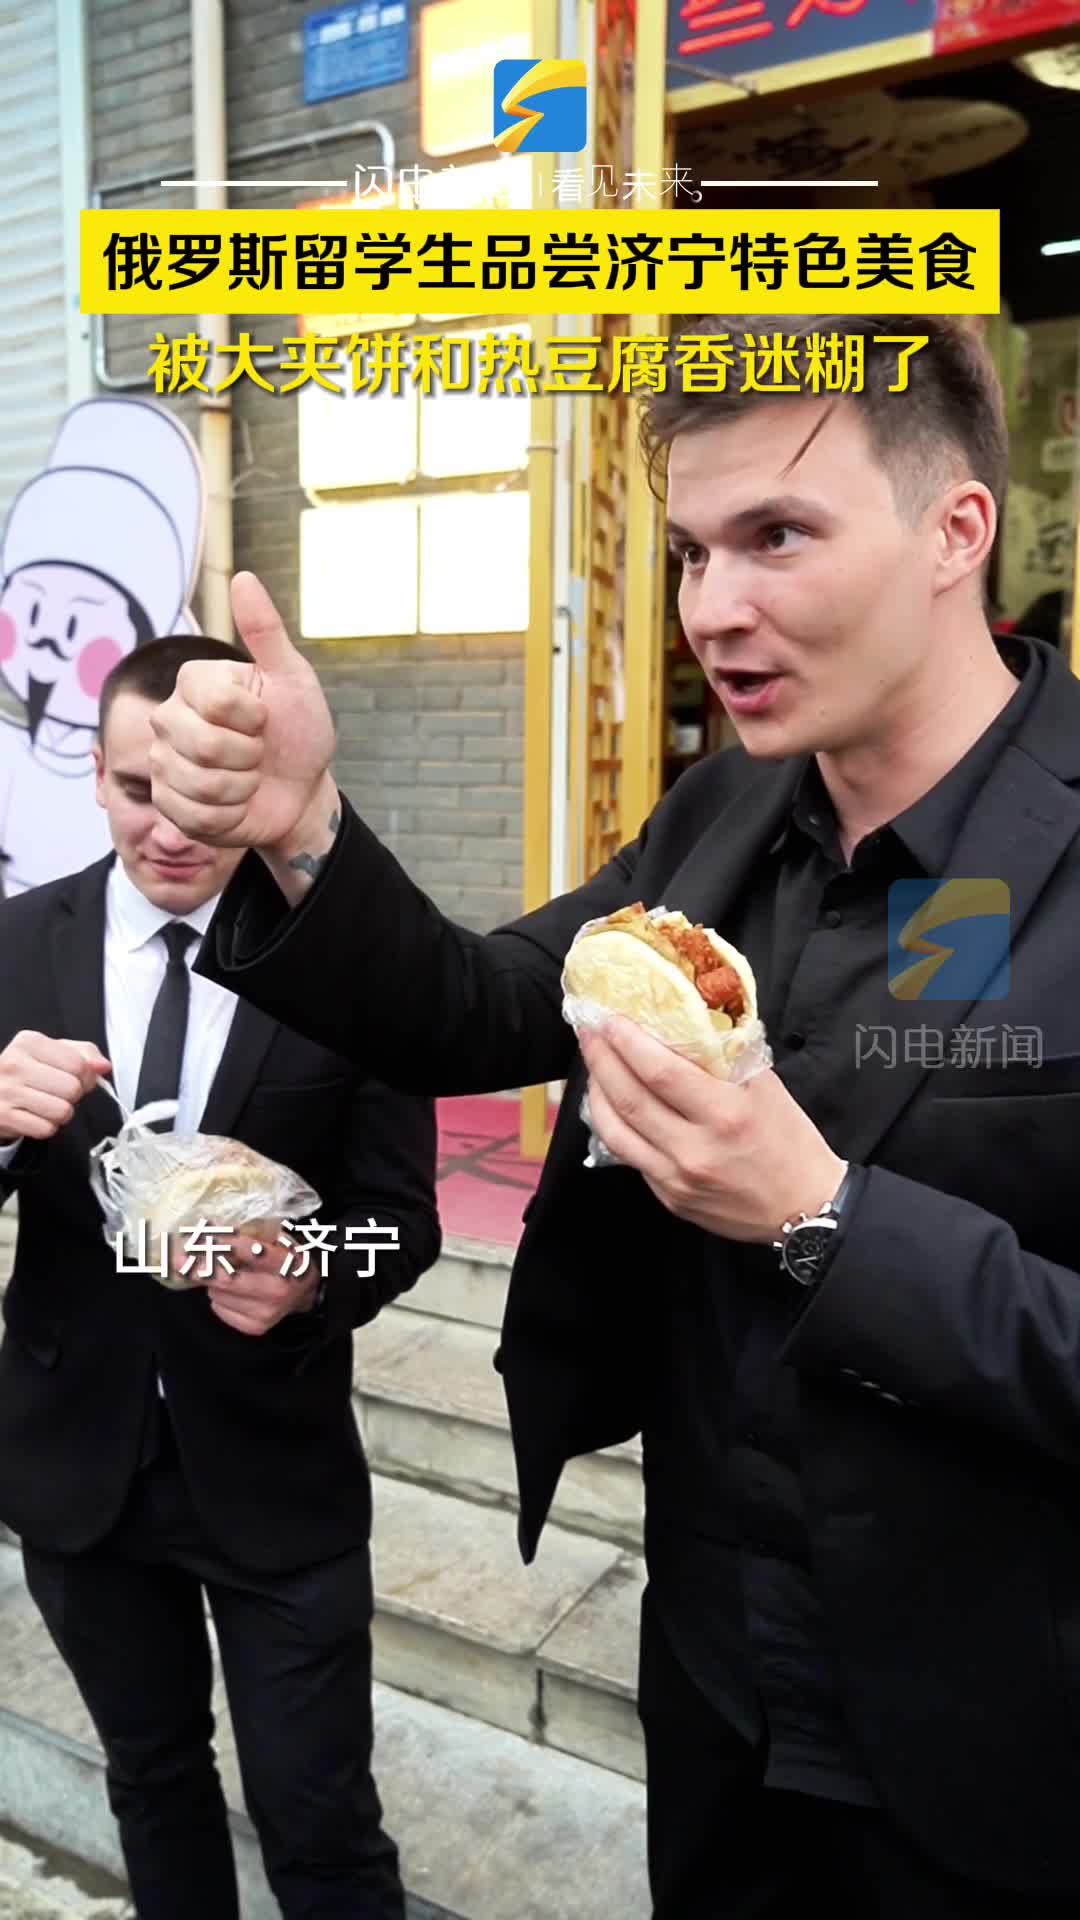 俄罗斯留学生品尝济宁特色美食 被大夹饼和热豆腐香迷糊了